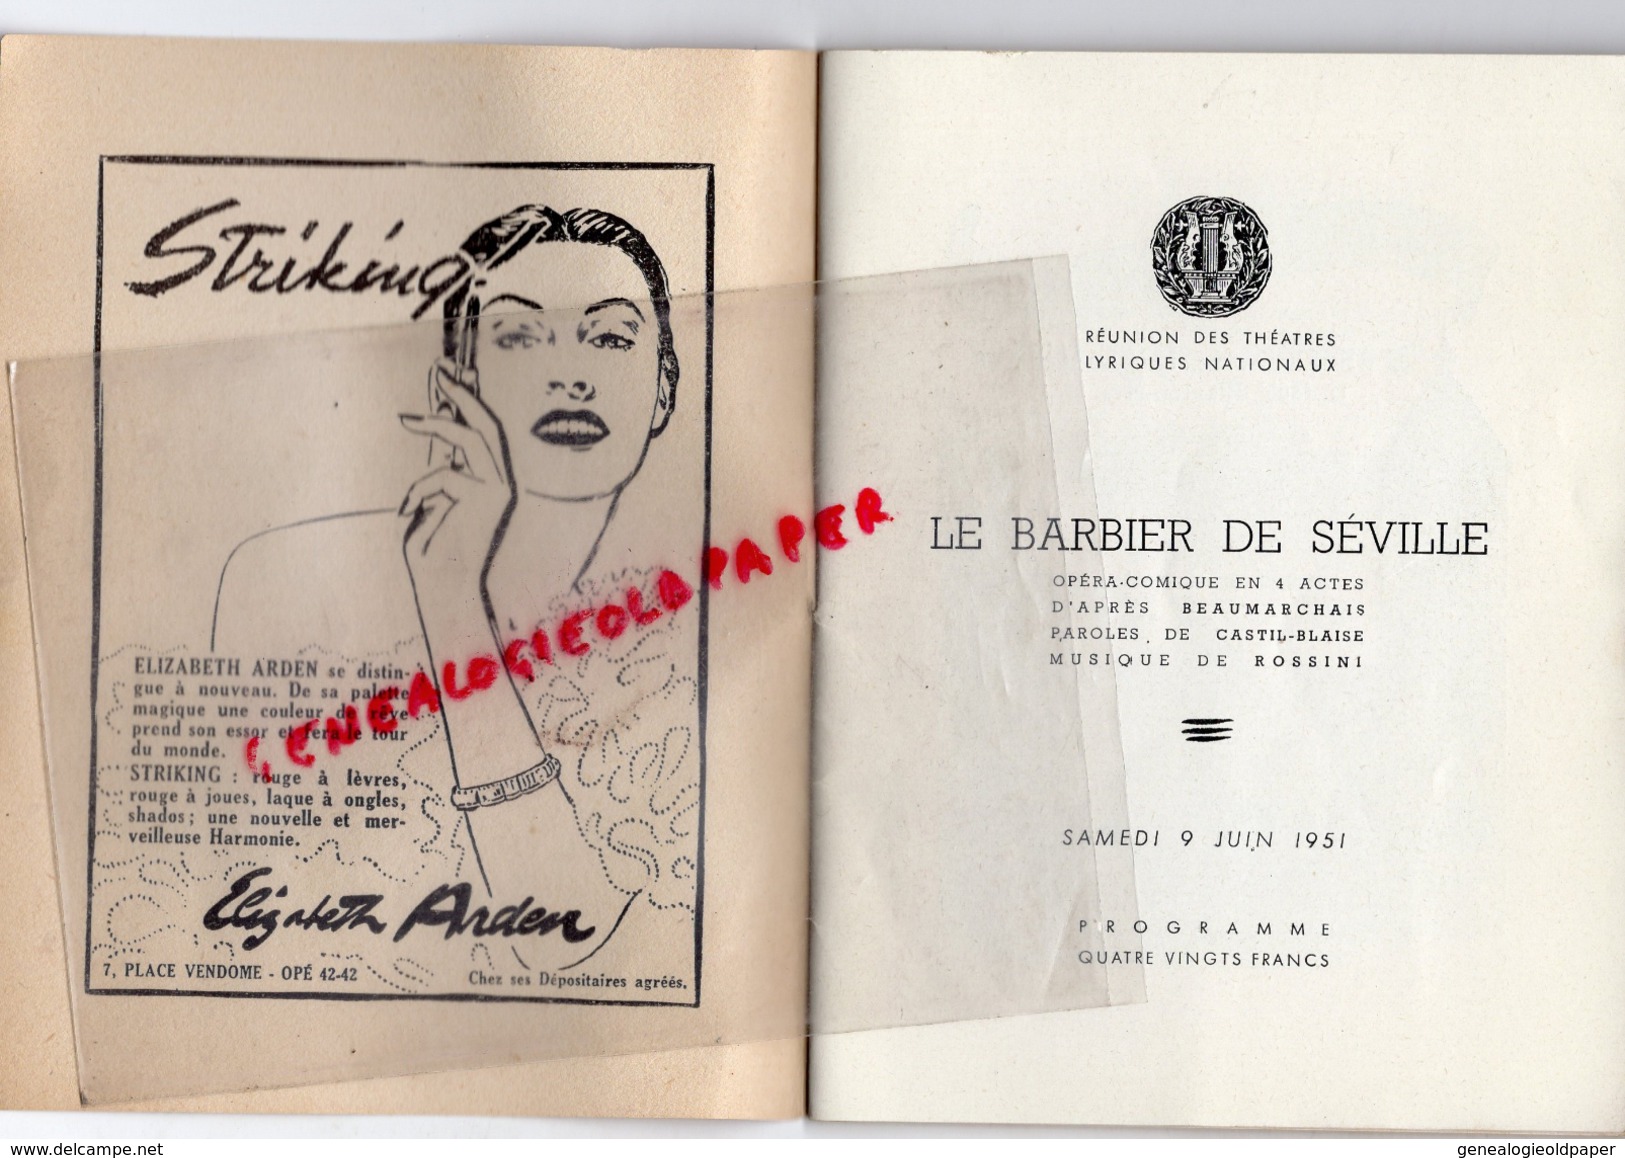 THEATRE NATIONAL DE L' OPERA COMIQUE - LE BARBIER DE SEVILLE-9 JUIN 1951- BAUDECROUX-TURBA RABIER-AMADE-LEGOUHY-CLEMENT - Programme